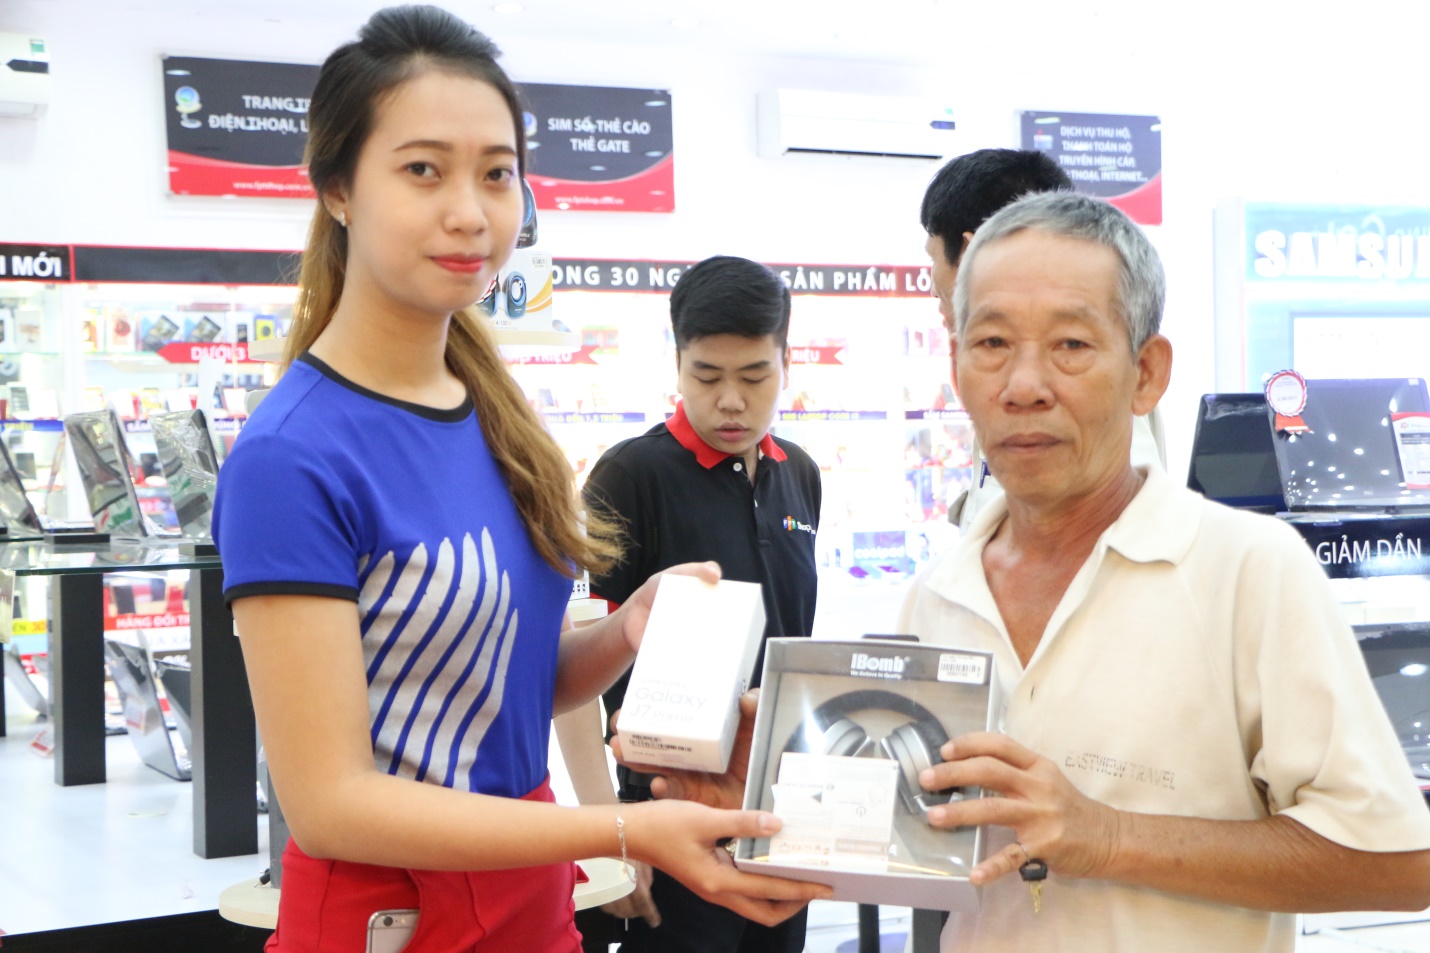 Chú Sơn là vị khách hàng đầu tiên sở hữu Galaxy J7 Prime tại FPT Shop 202 Nguyễn Thị Minh Khai, TP.HCM